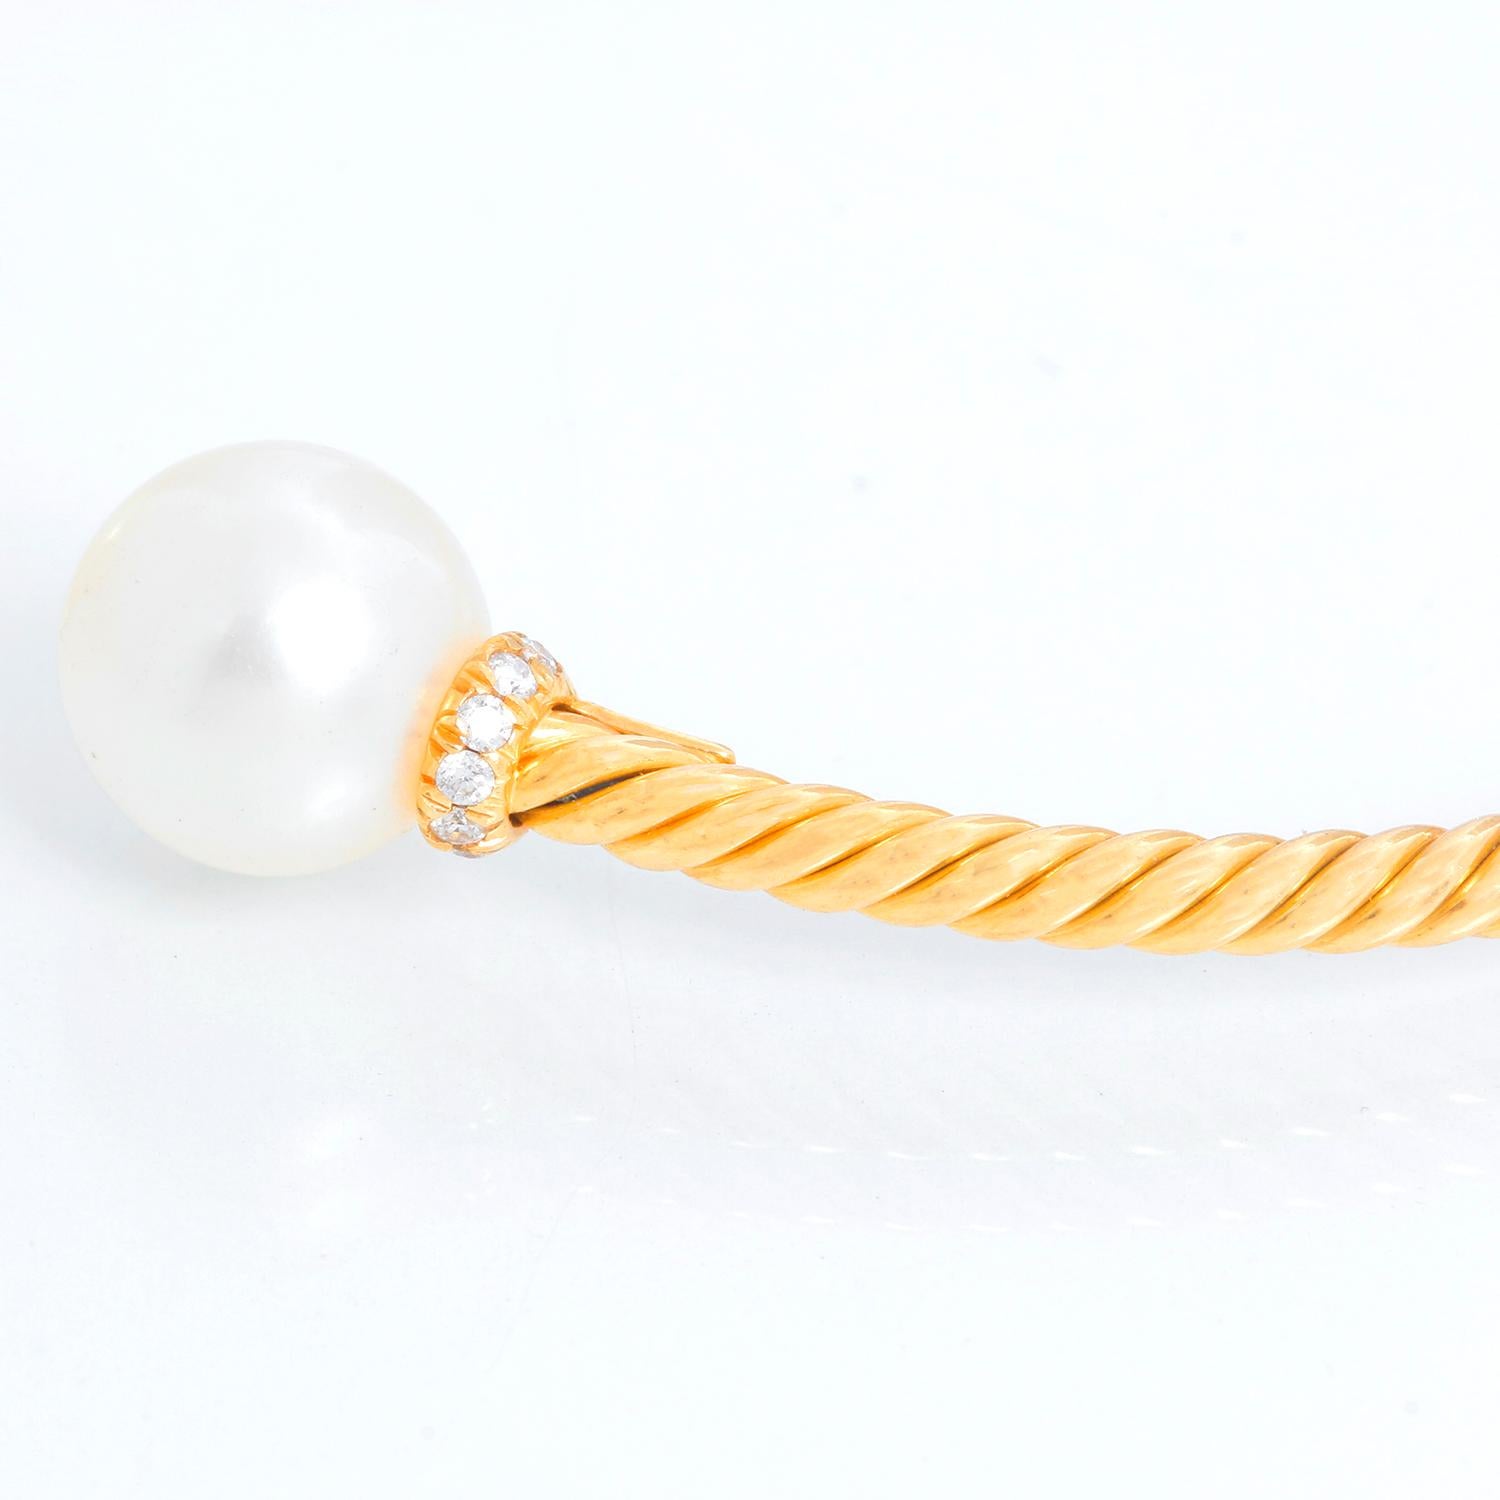 David Yurman Petite Solari Pearl & Pave Diamond Bracelet - Petite Solari Pearl Bracelet aus 18 Karat Gelbgold mit Pavé-Diamanten. 18 Karat Gelbgold mit zwei weißen Akoya-Perlen von 6 mm. Pave-Diamanten mit einem Gewicht von 0,08 Karat. Das Armband